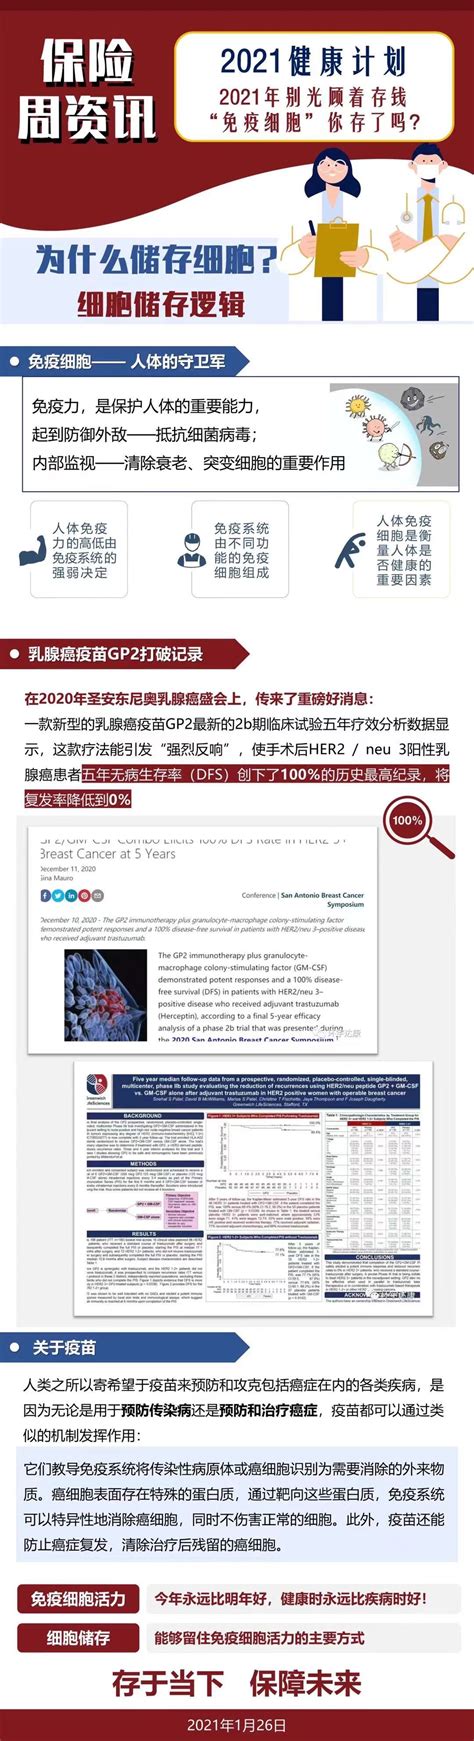 宜信与格莱珉中国建立战略合作 书写公益金融新篇章|界面新闻